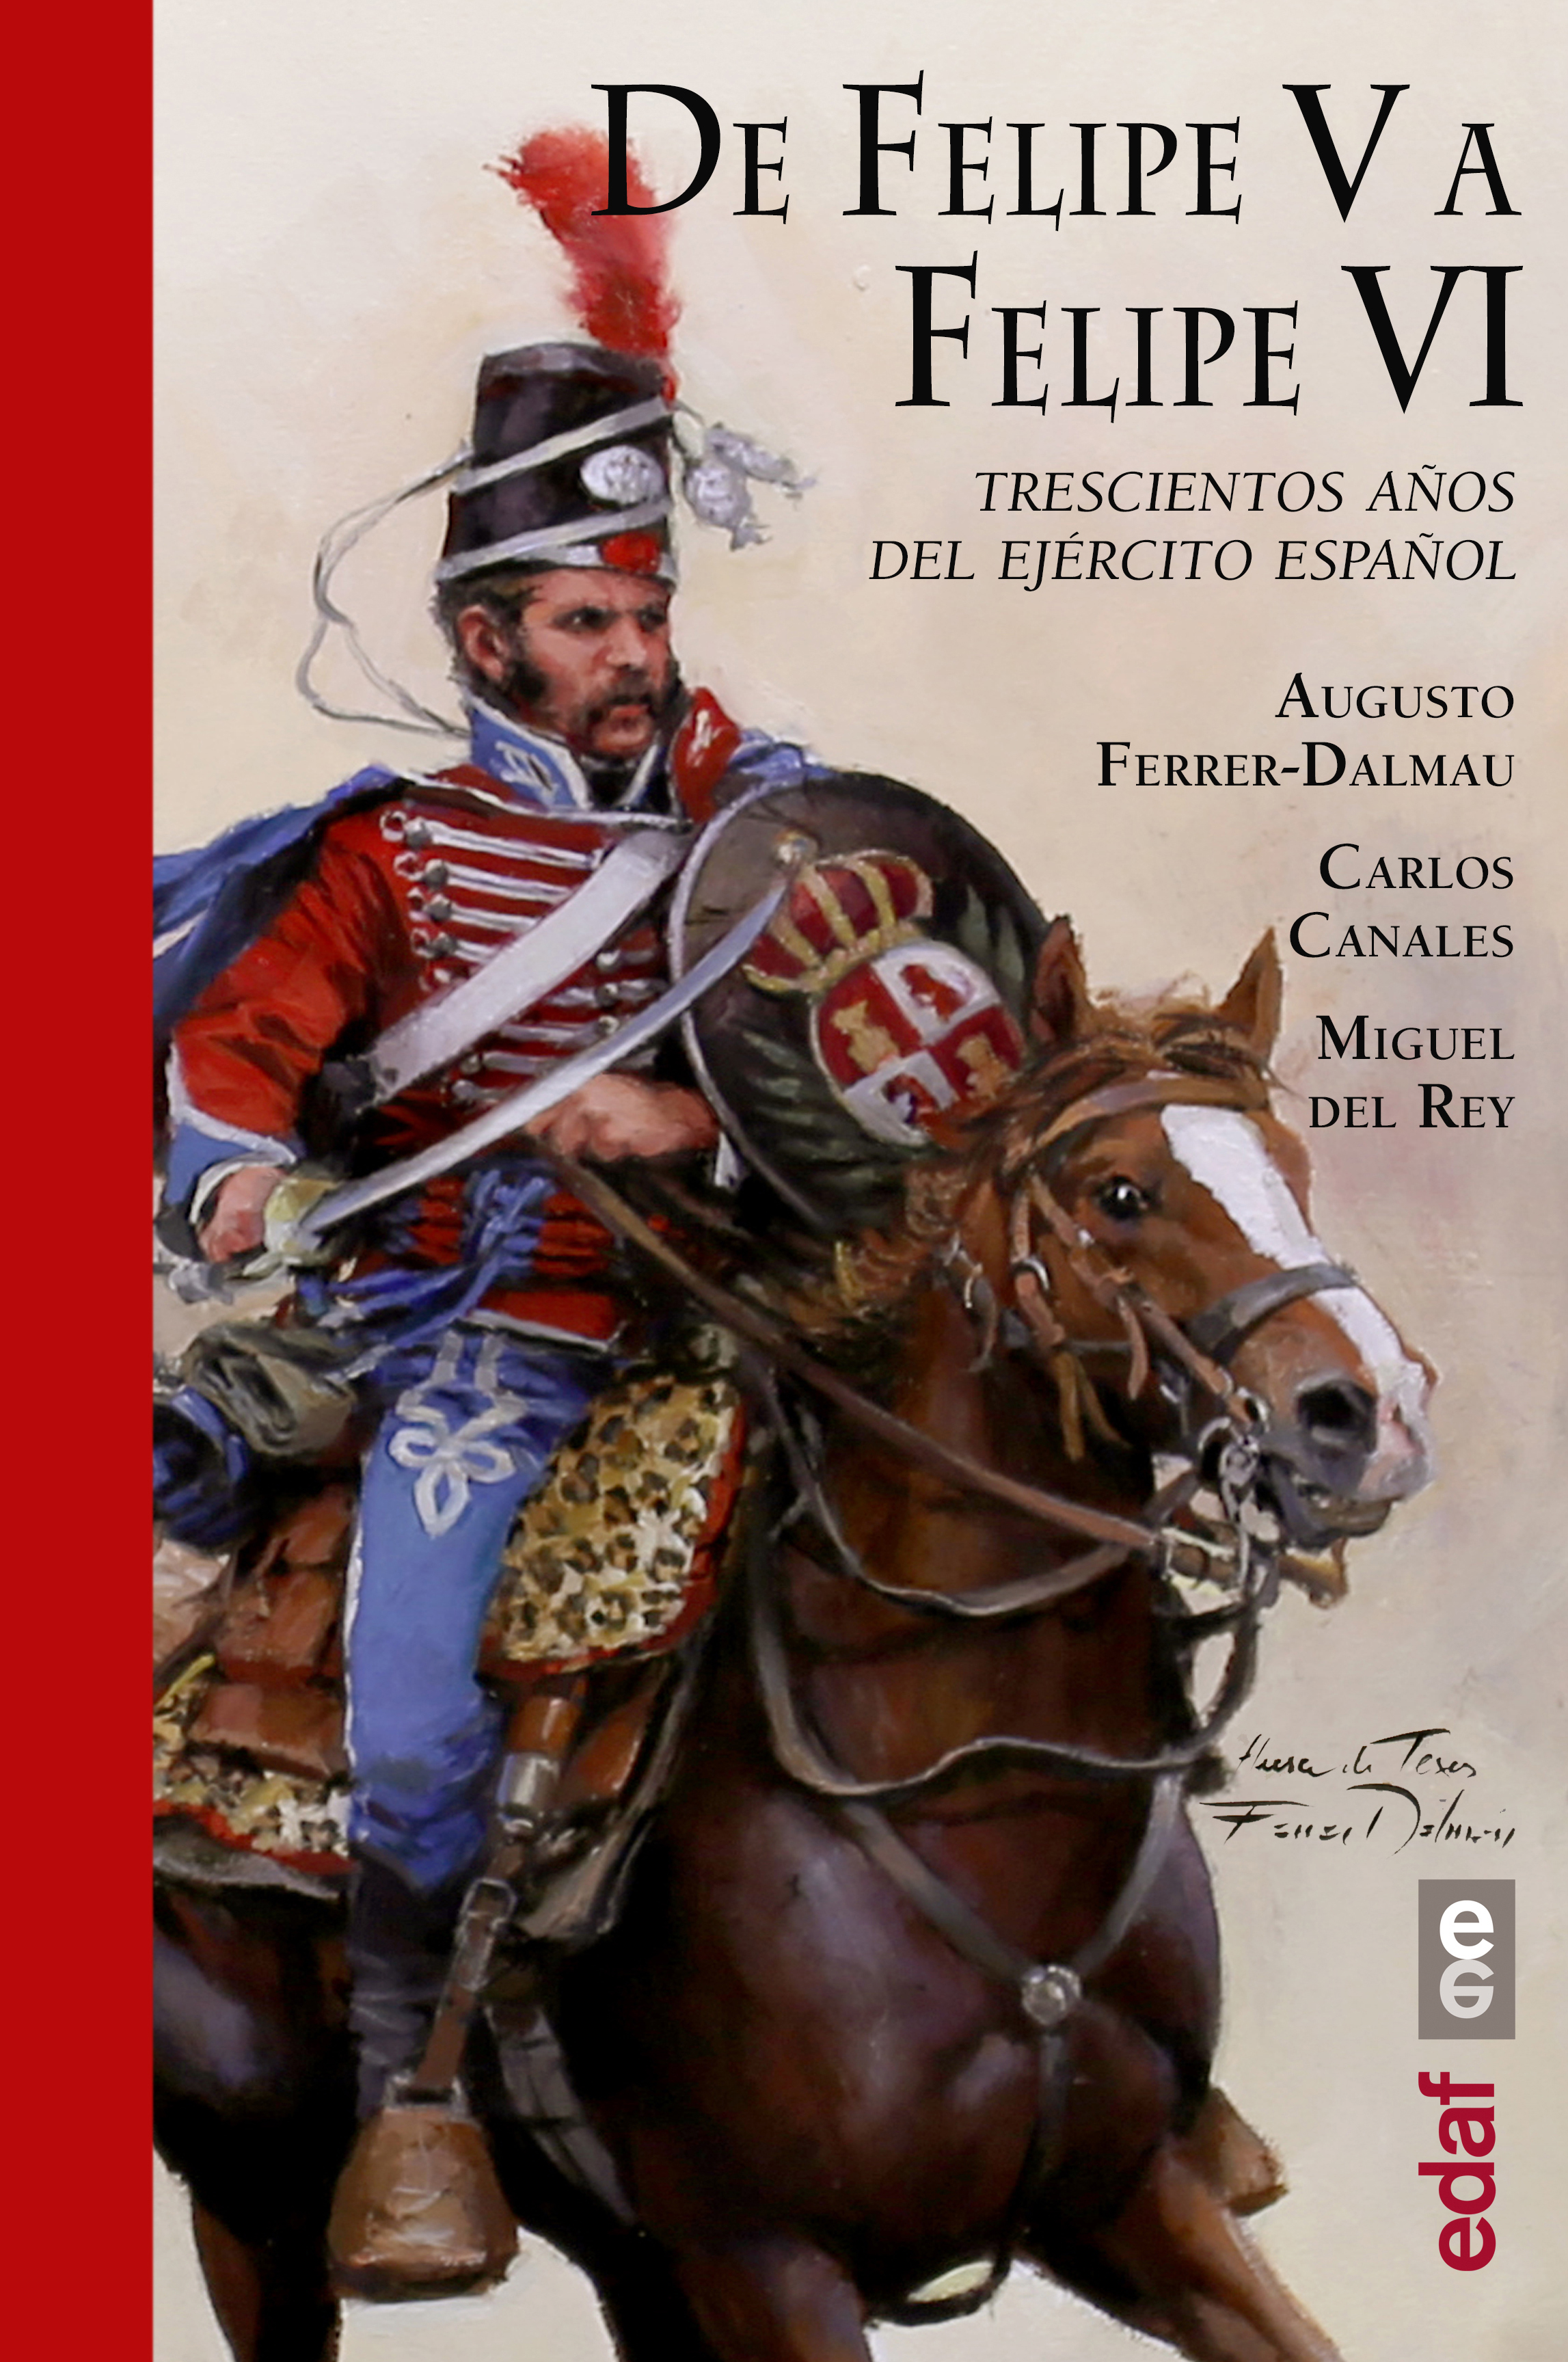 De Felipe V a Felipe VI «Trescientos años del ejército español» (9788441438910)